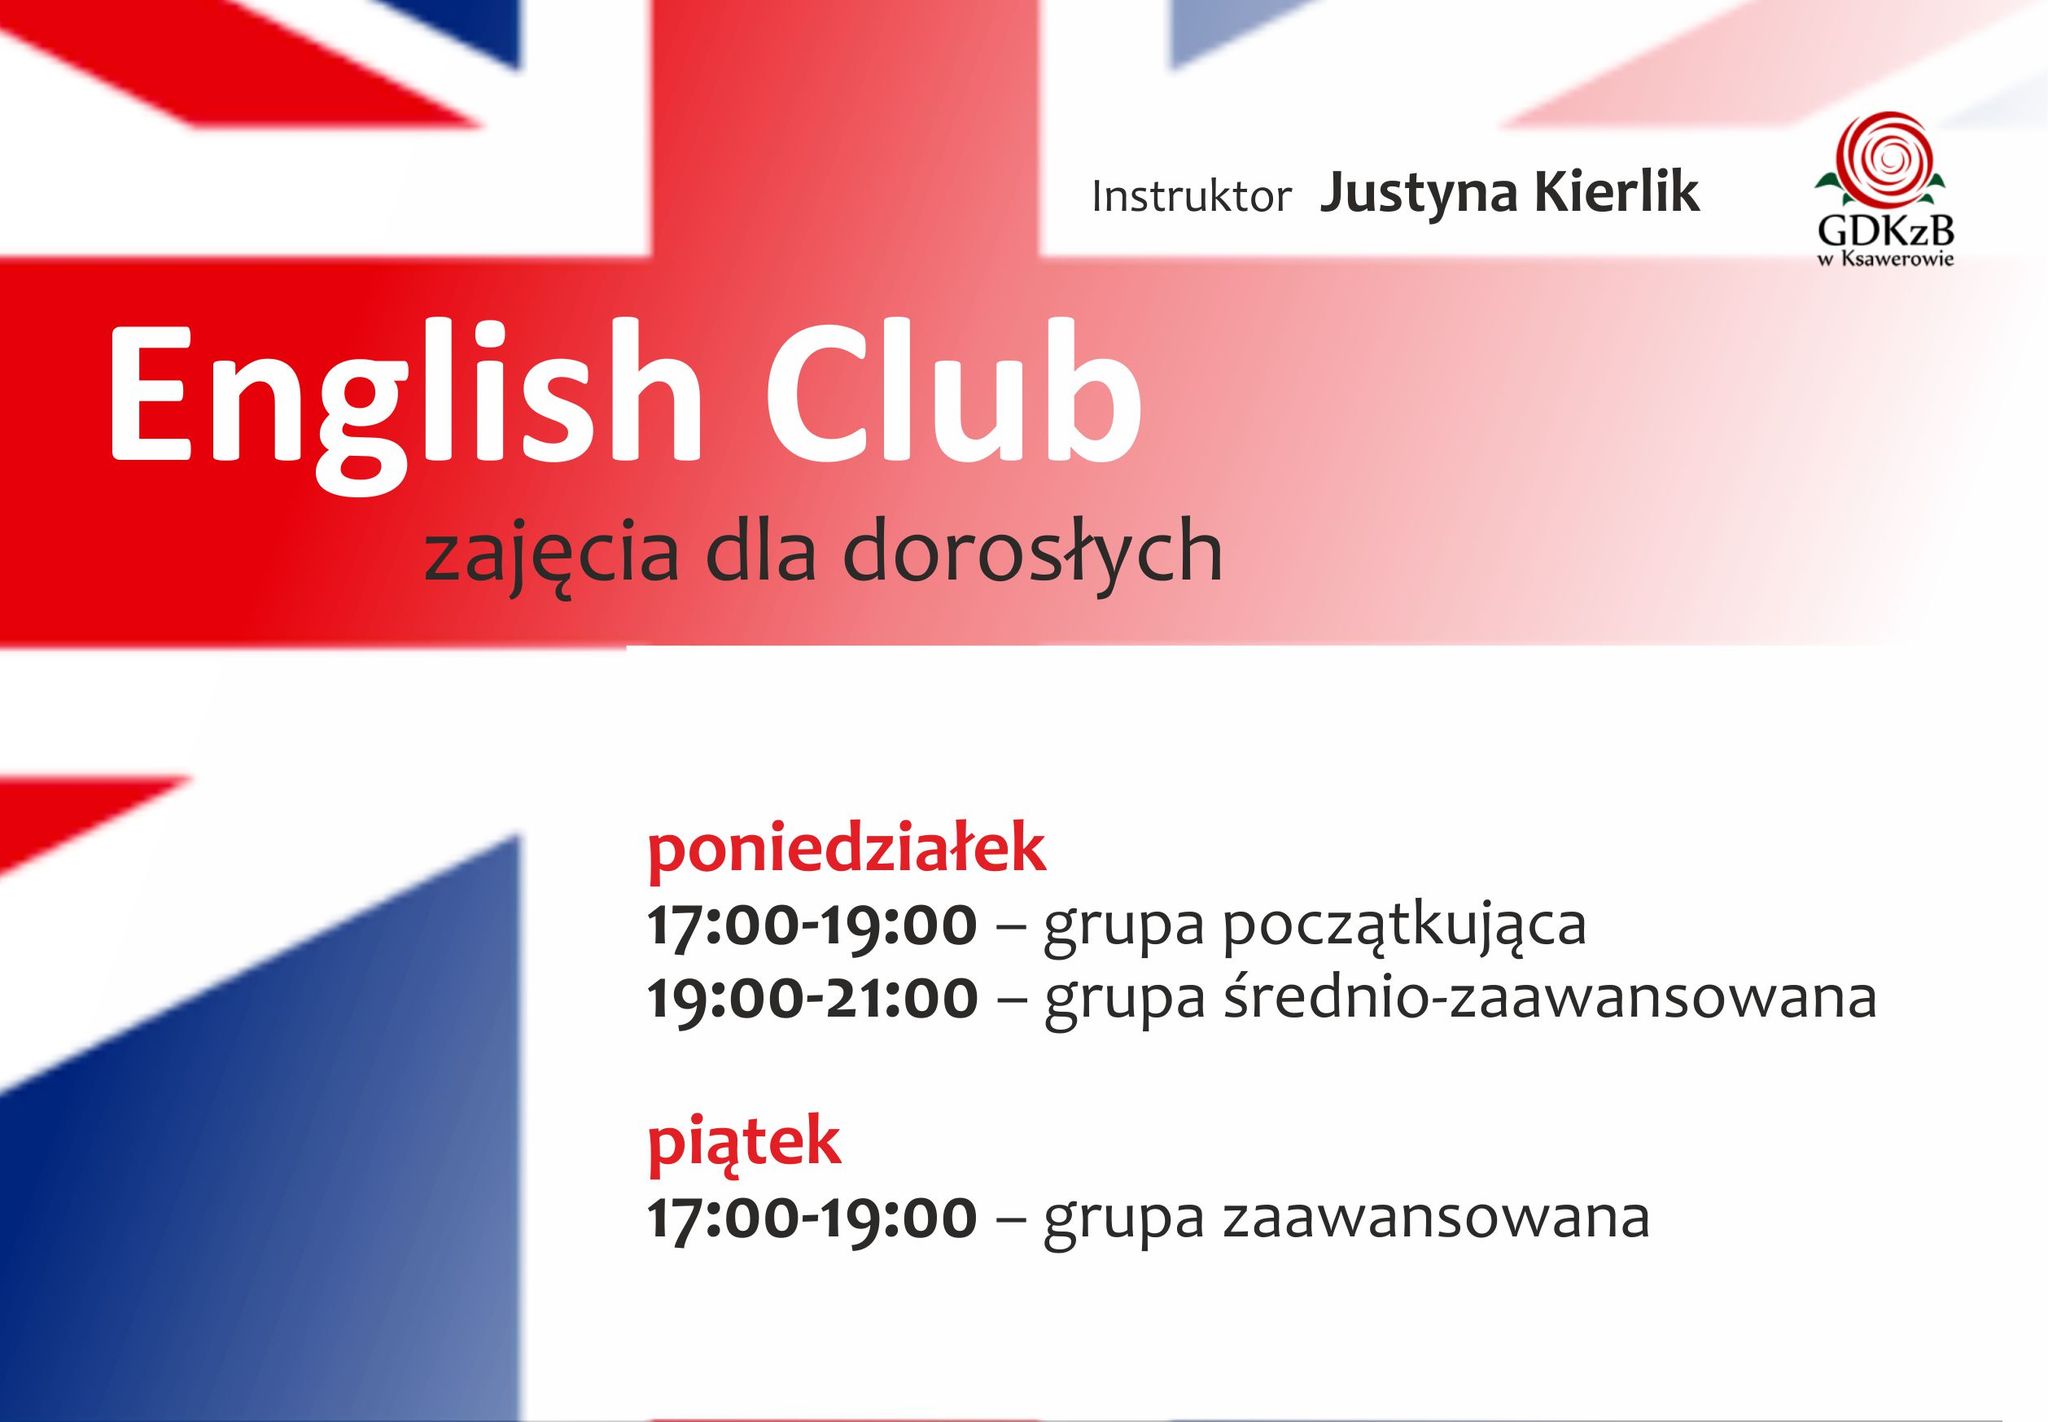 English club, instruktor Justyna Kierlik, zajęcia dla dorosłych, poniedziałek 17:00 - 19:00 grupa początkująca, 19:00 - 21:00 grupa średnio - zaawansowana, piątek 17:00 - 19:00 grupa zaawansowana